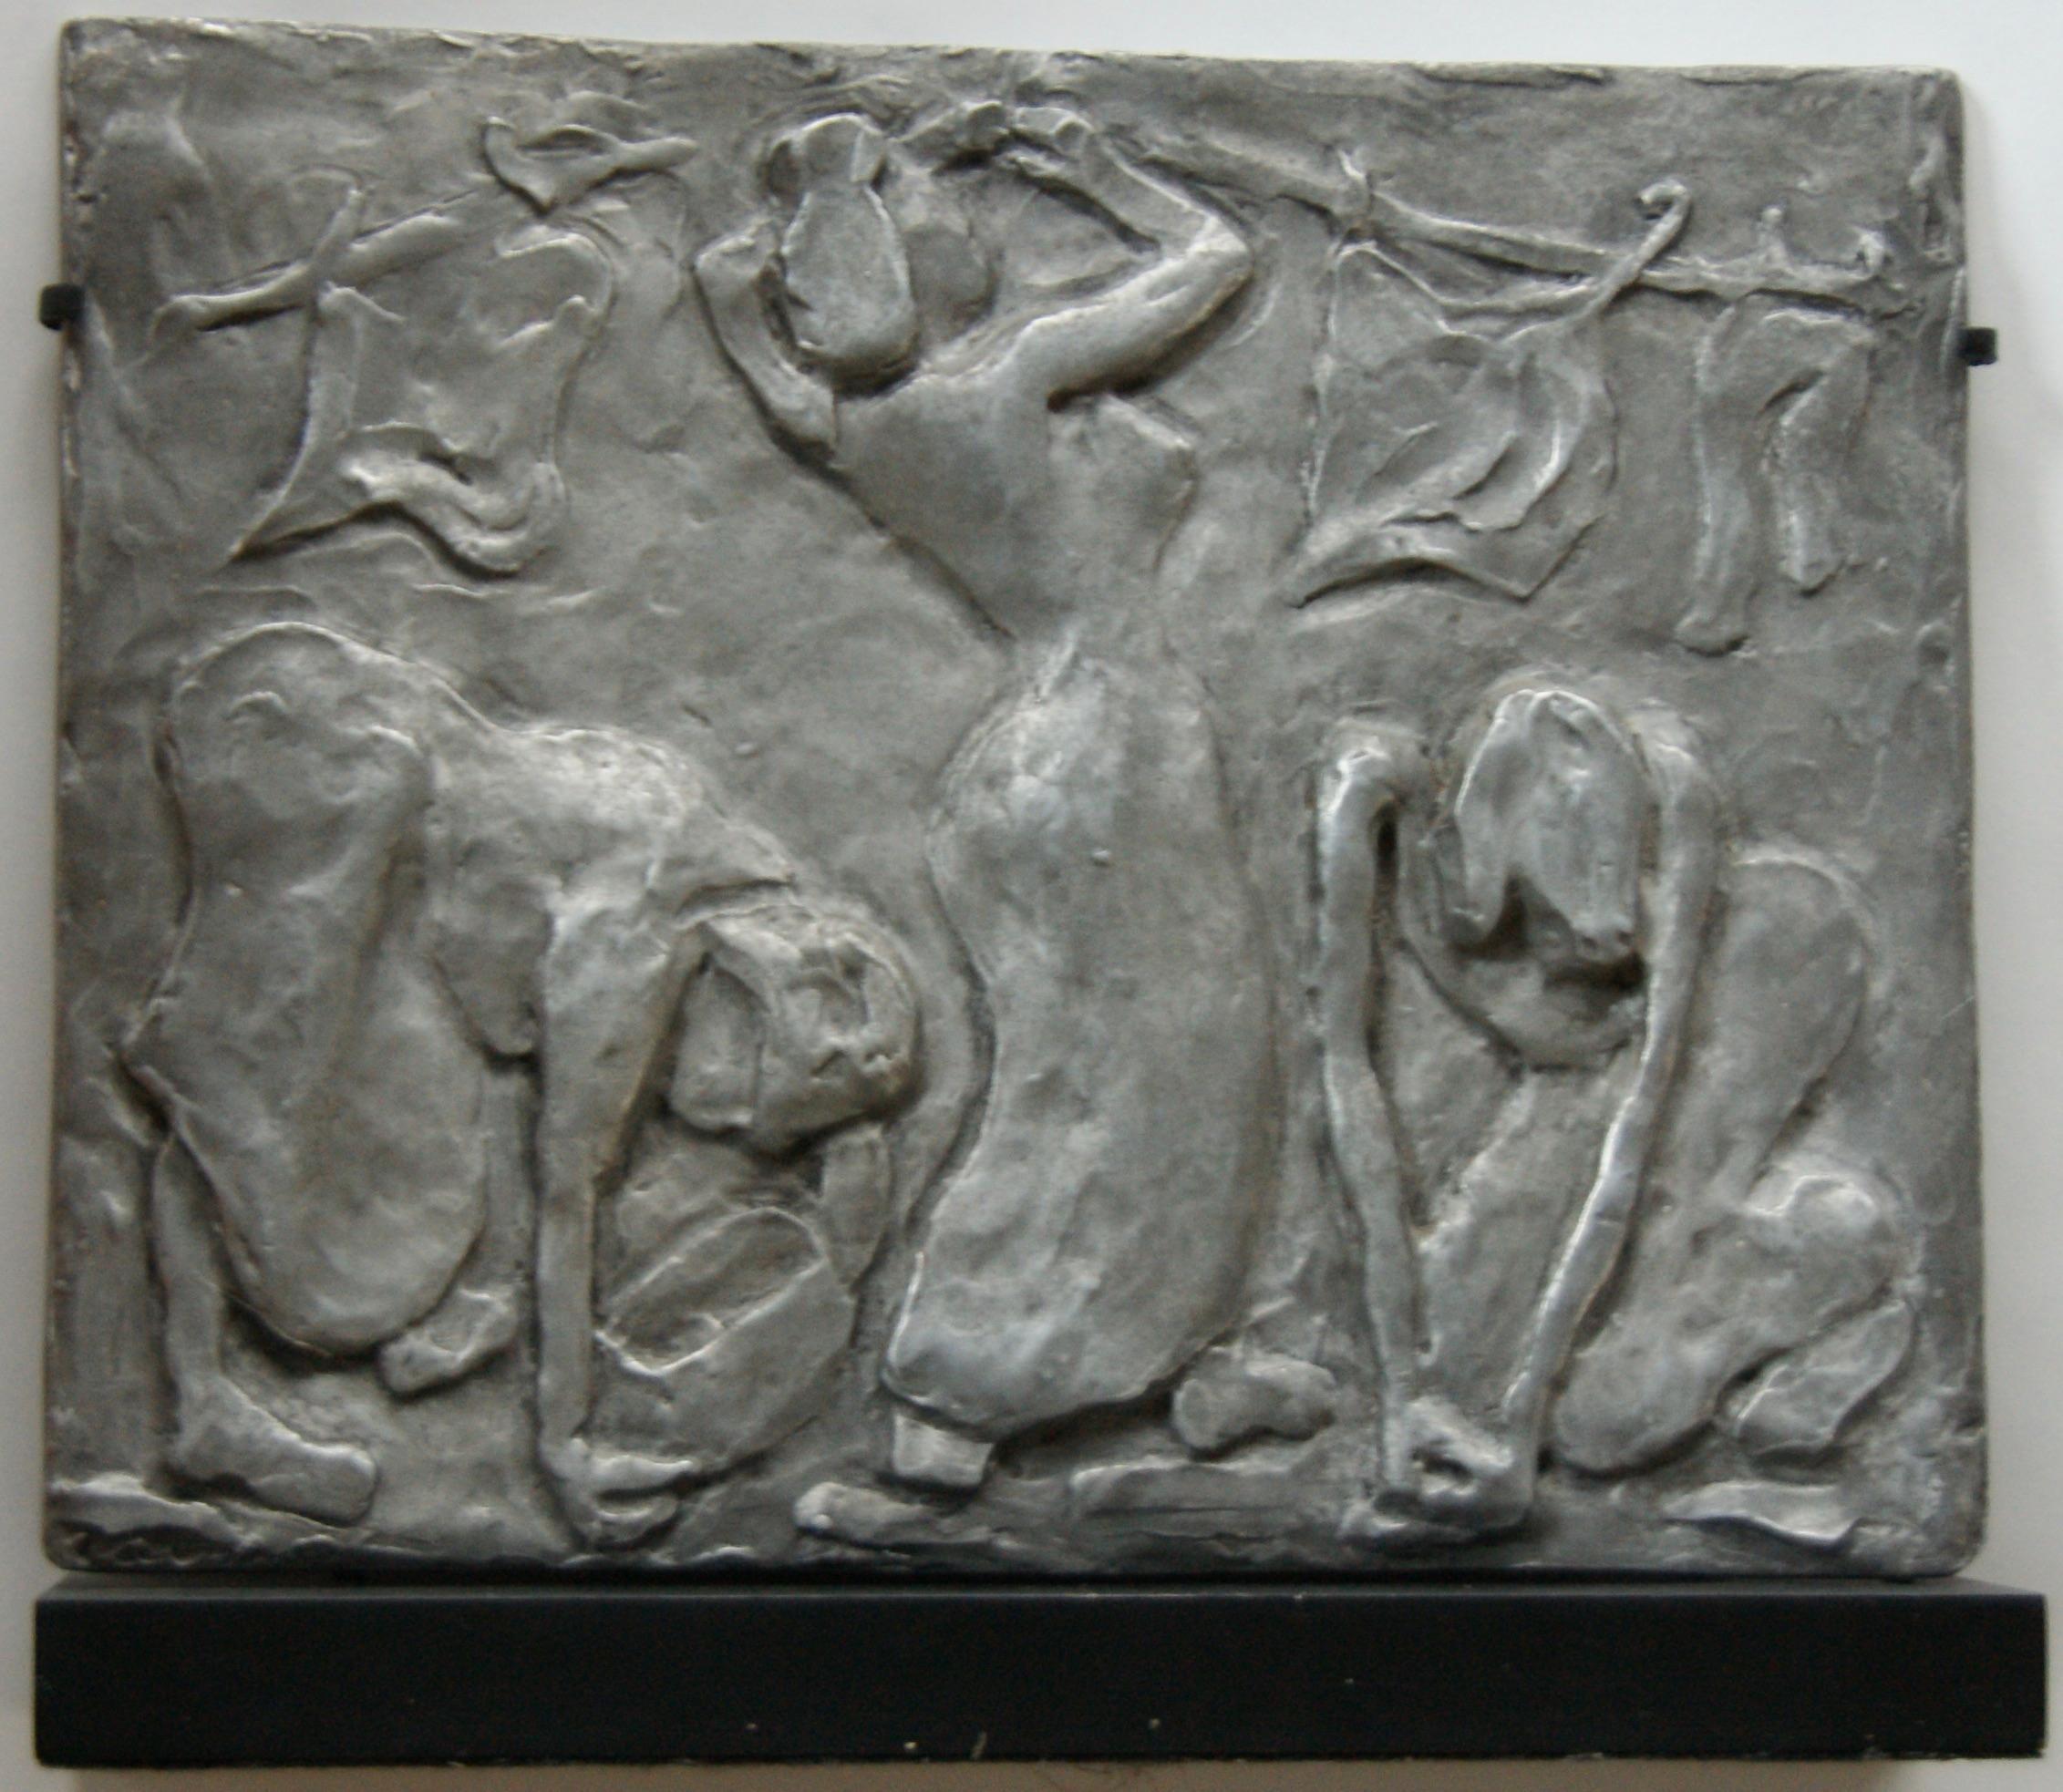 Alice Carr de Creeft Figurative Sculpture - "Washing Women" Cast Aluminum Plaque Sculpture WPA American Modern 20th Century